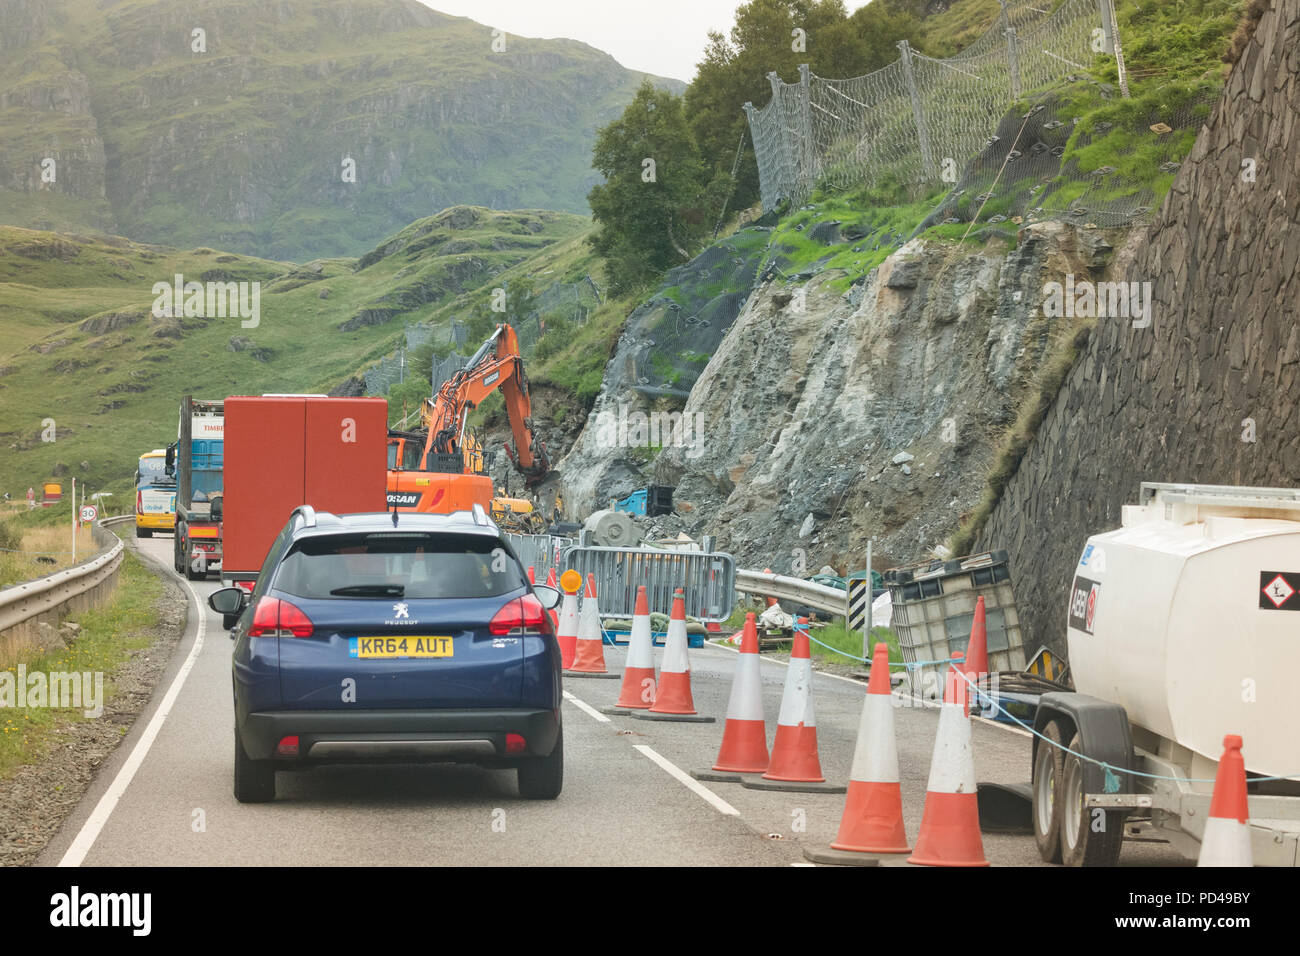 Repos et être reconnaissant un83 road, Scotland, UK - coulée de débris d'excavation de fosses de rattrapage pour aider à réduire les fermetures de route en raison des glissements de terrain Banque D'Images